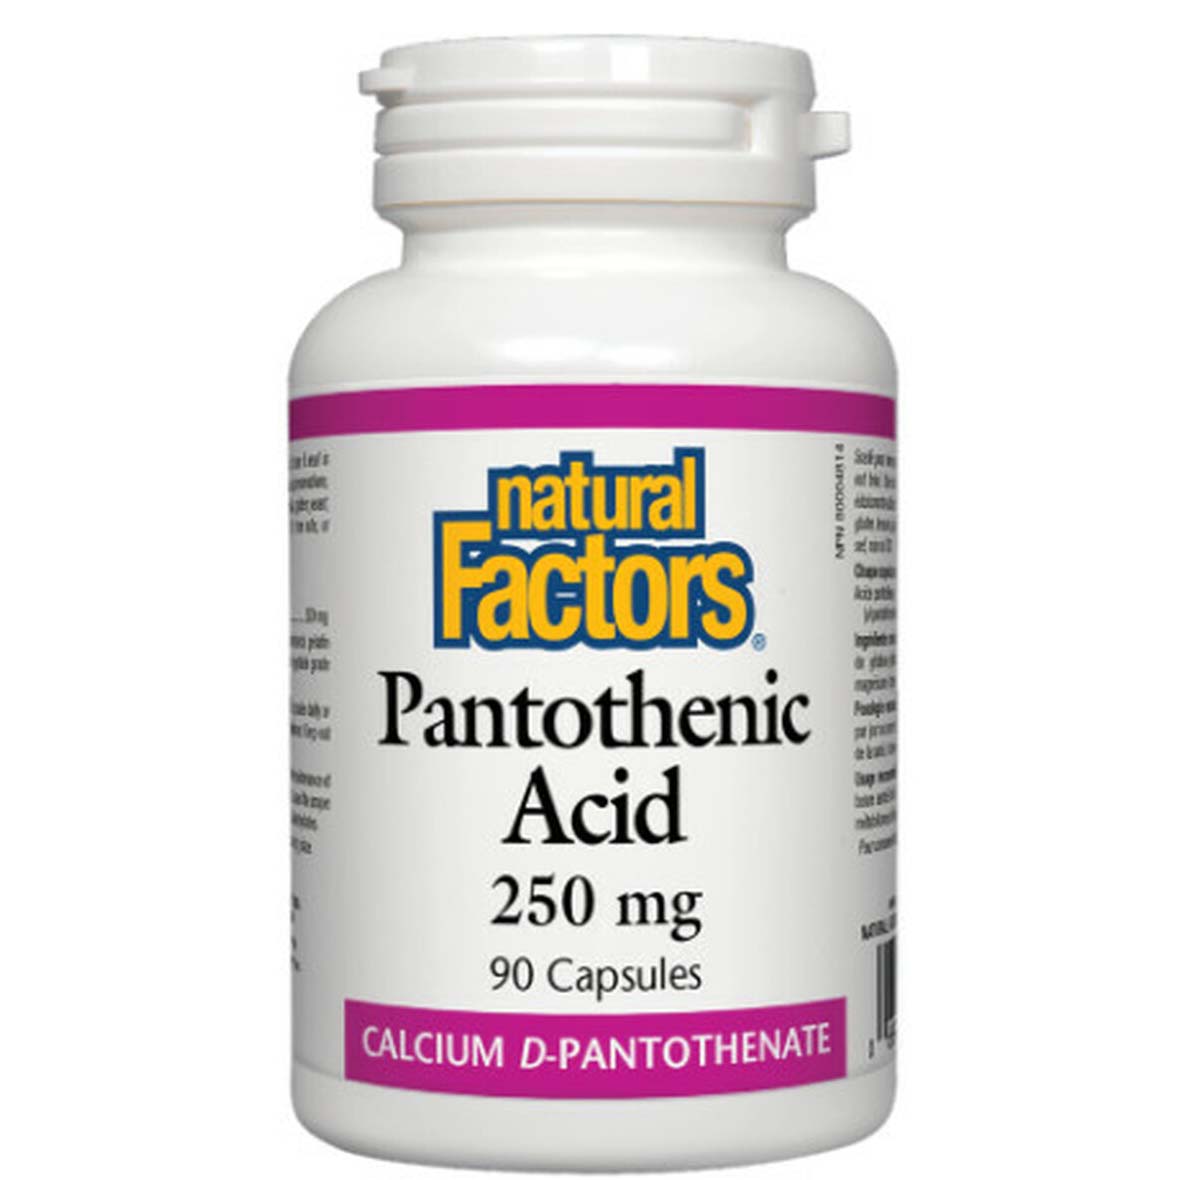 Natural Factors Pantothenic Acid, 250 mg, 90 Capsules